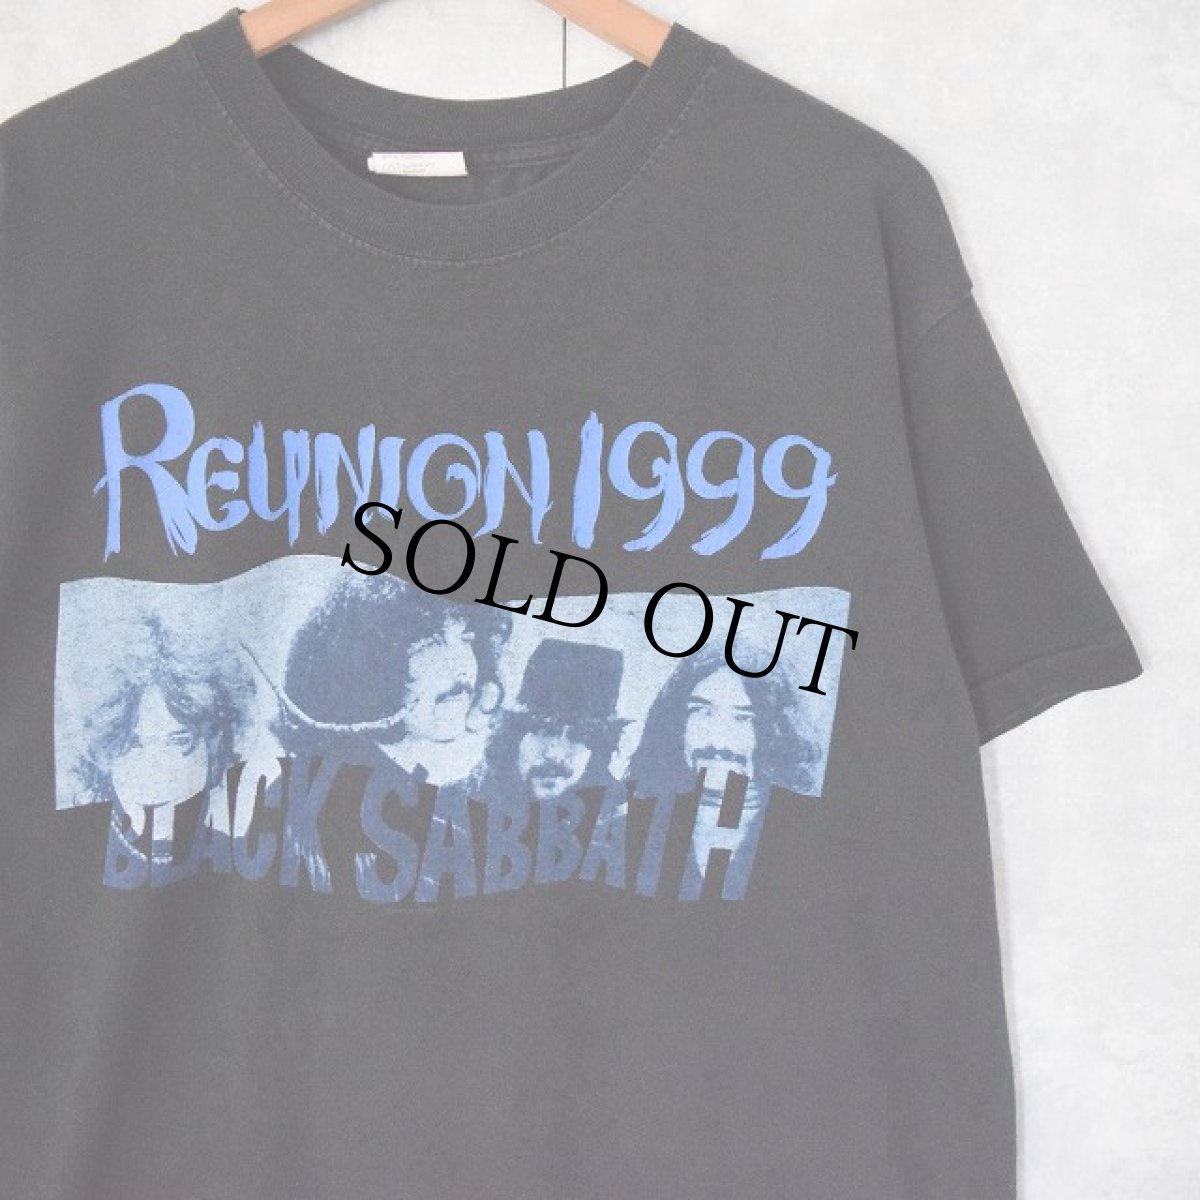 画像1: 90's BLACK SABBATH "REUNION 1999" ヘヴィメタルロックバンドプリントTシャツ L (1)